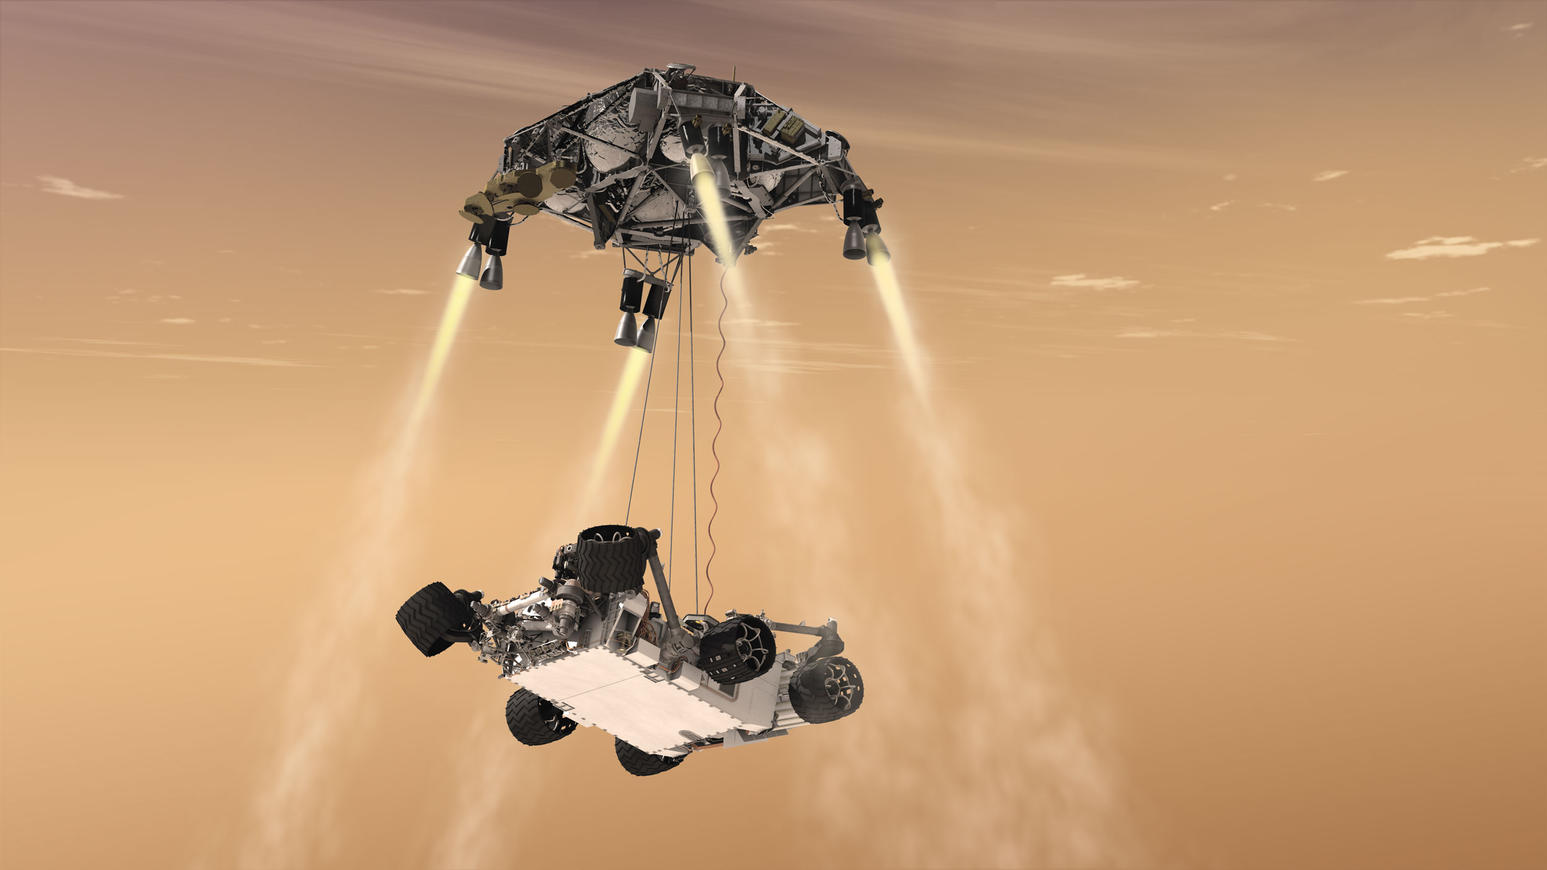 Mars 2020 Sky Crane